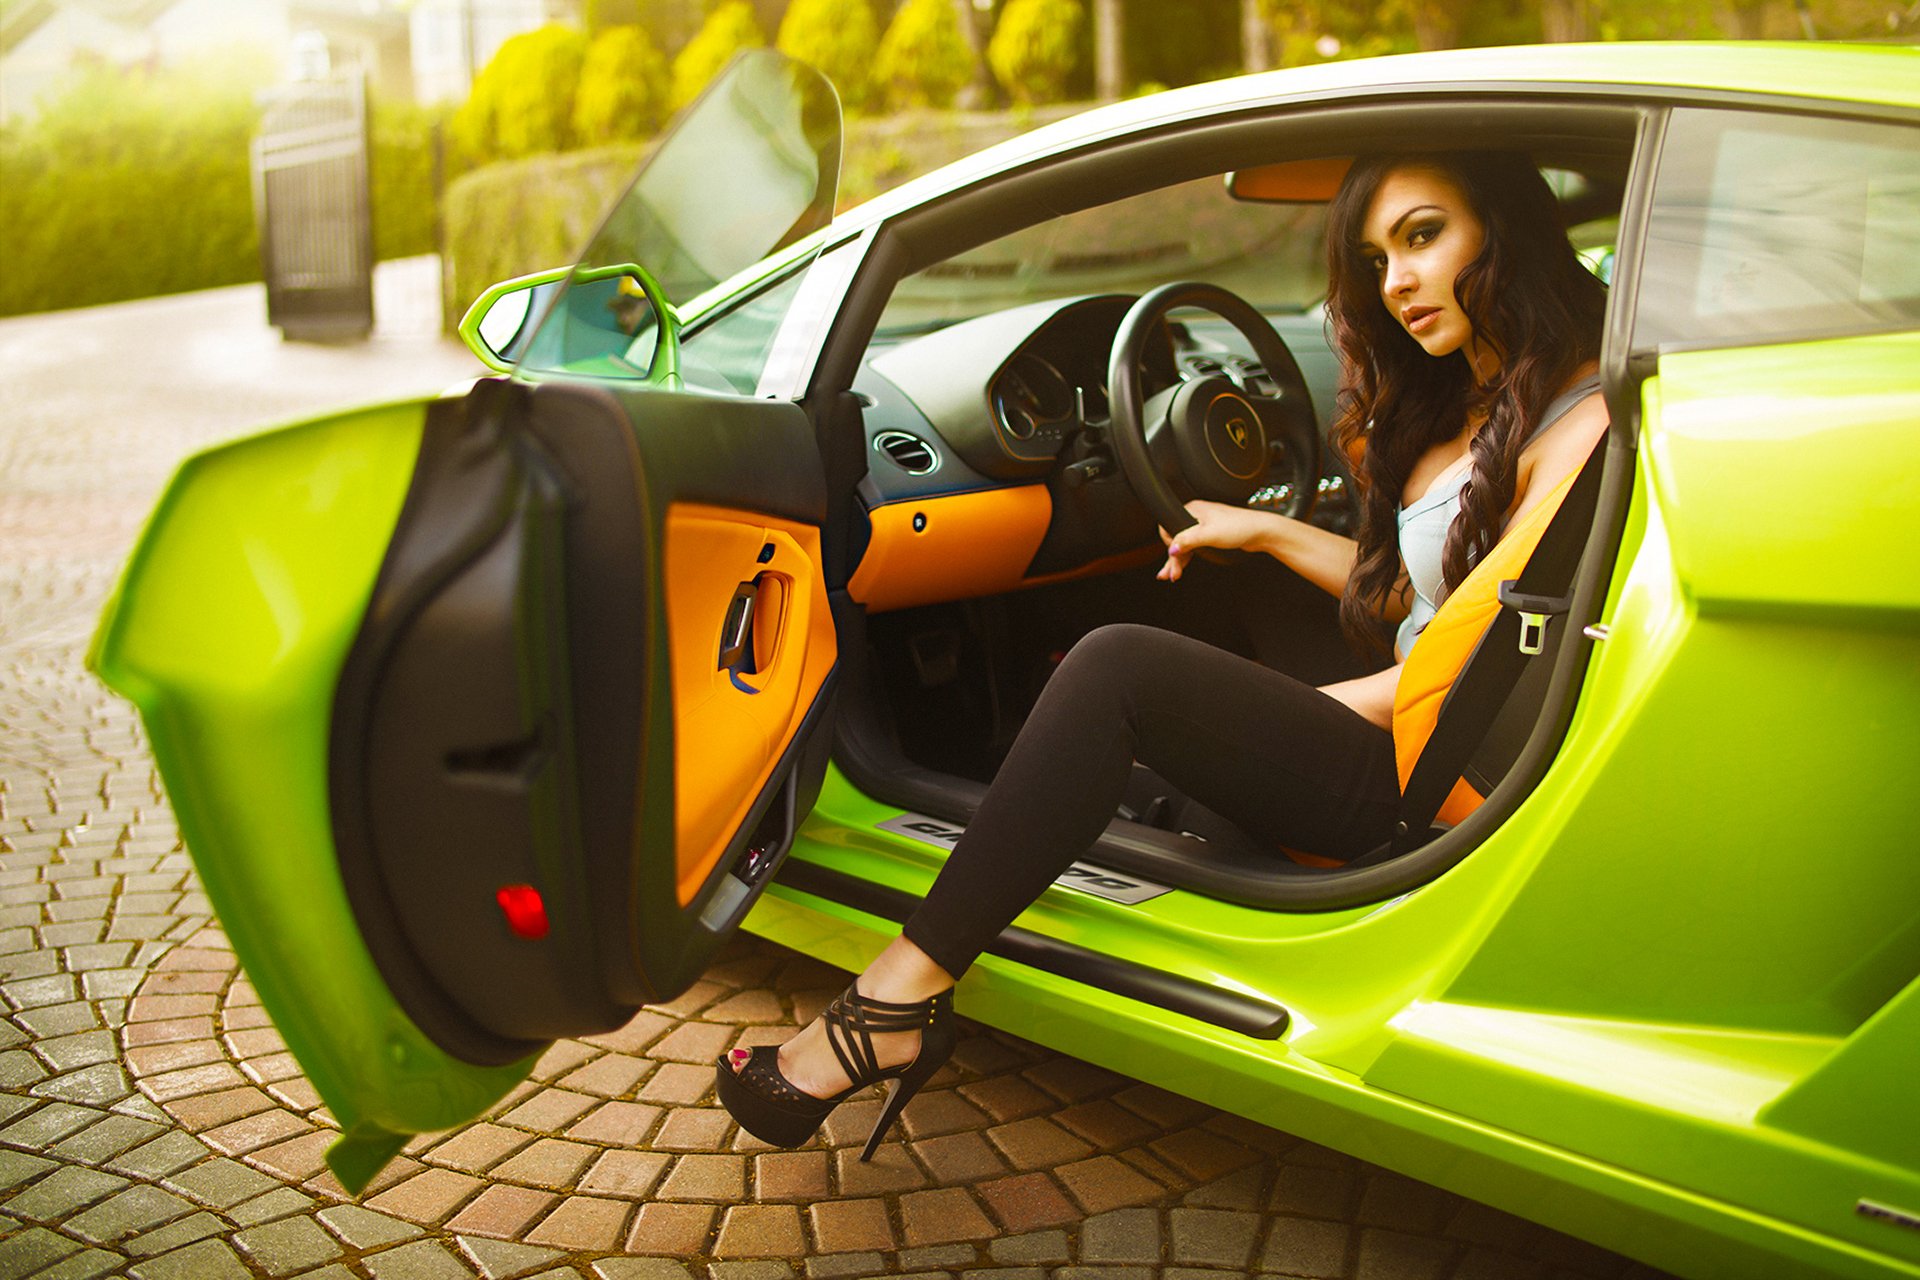 Музыка в машину лучшее. Девушка в машине. Девушка за рулем спорткара. Шикарная женщина и автомобиль. Зеленый автомобиль и девушка.